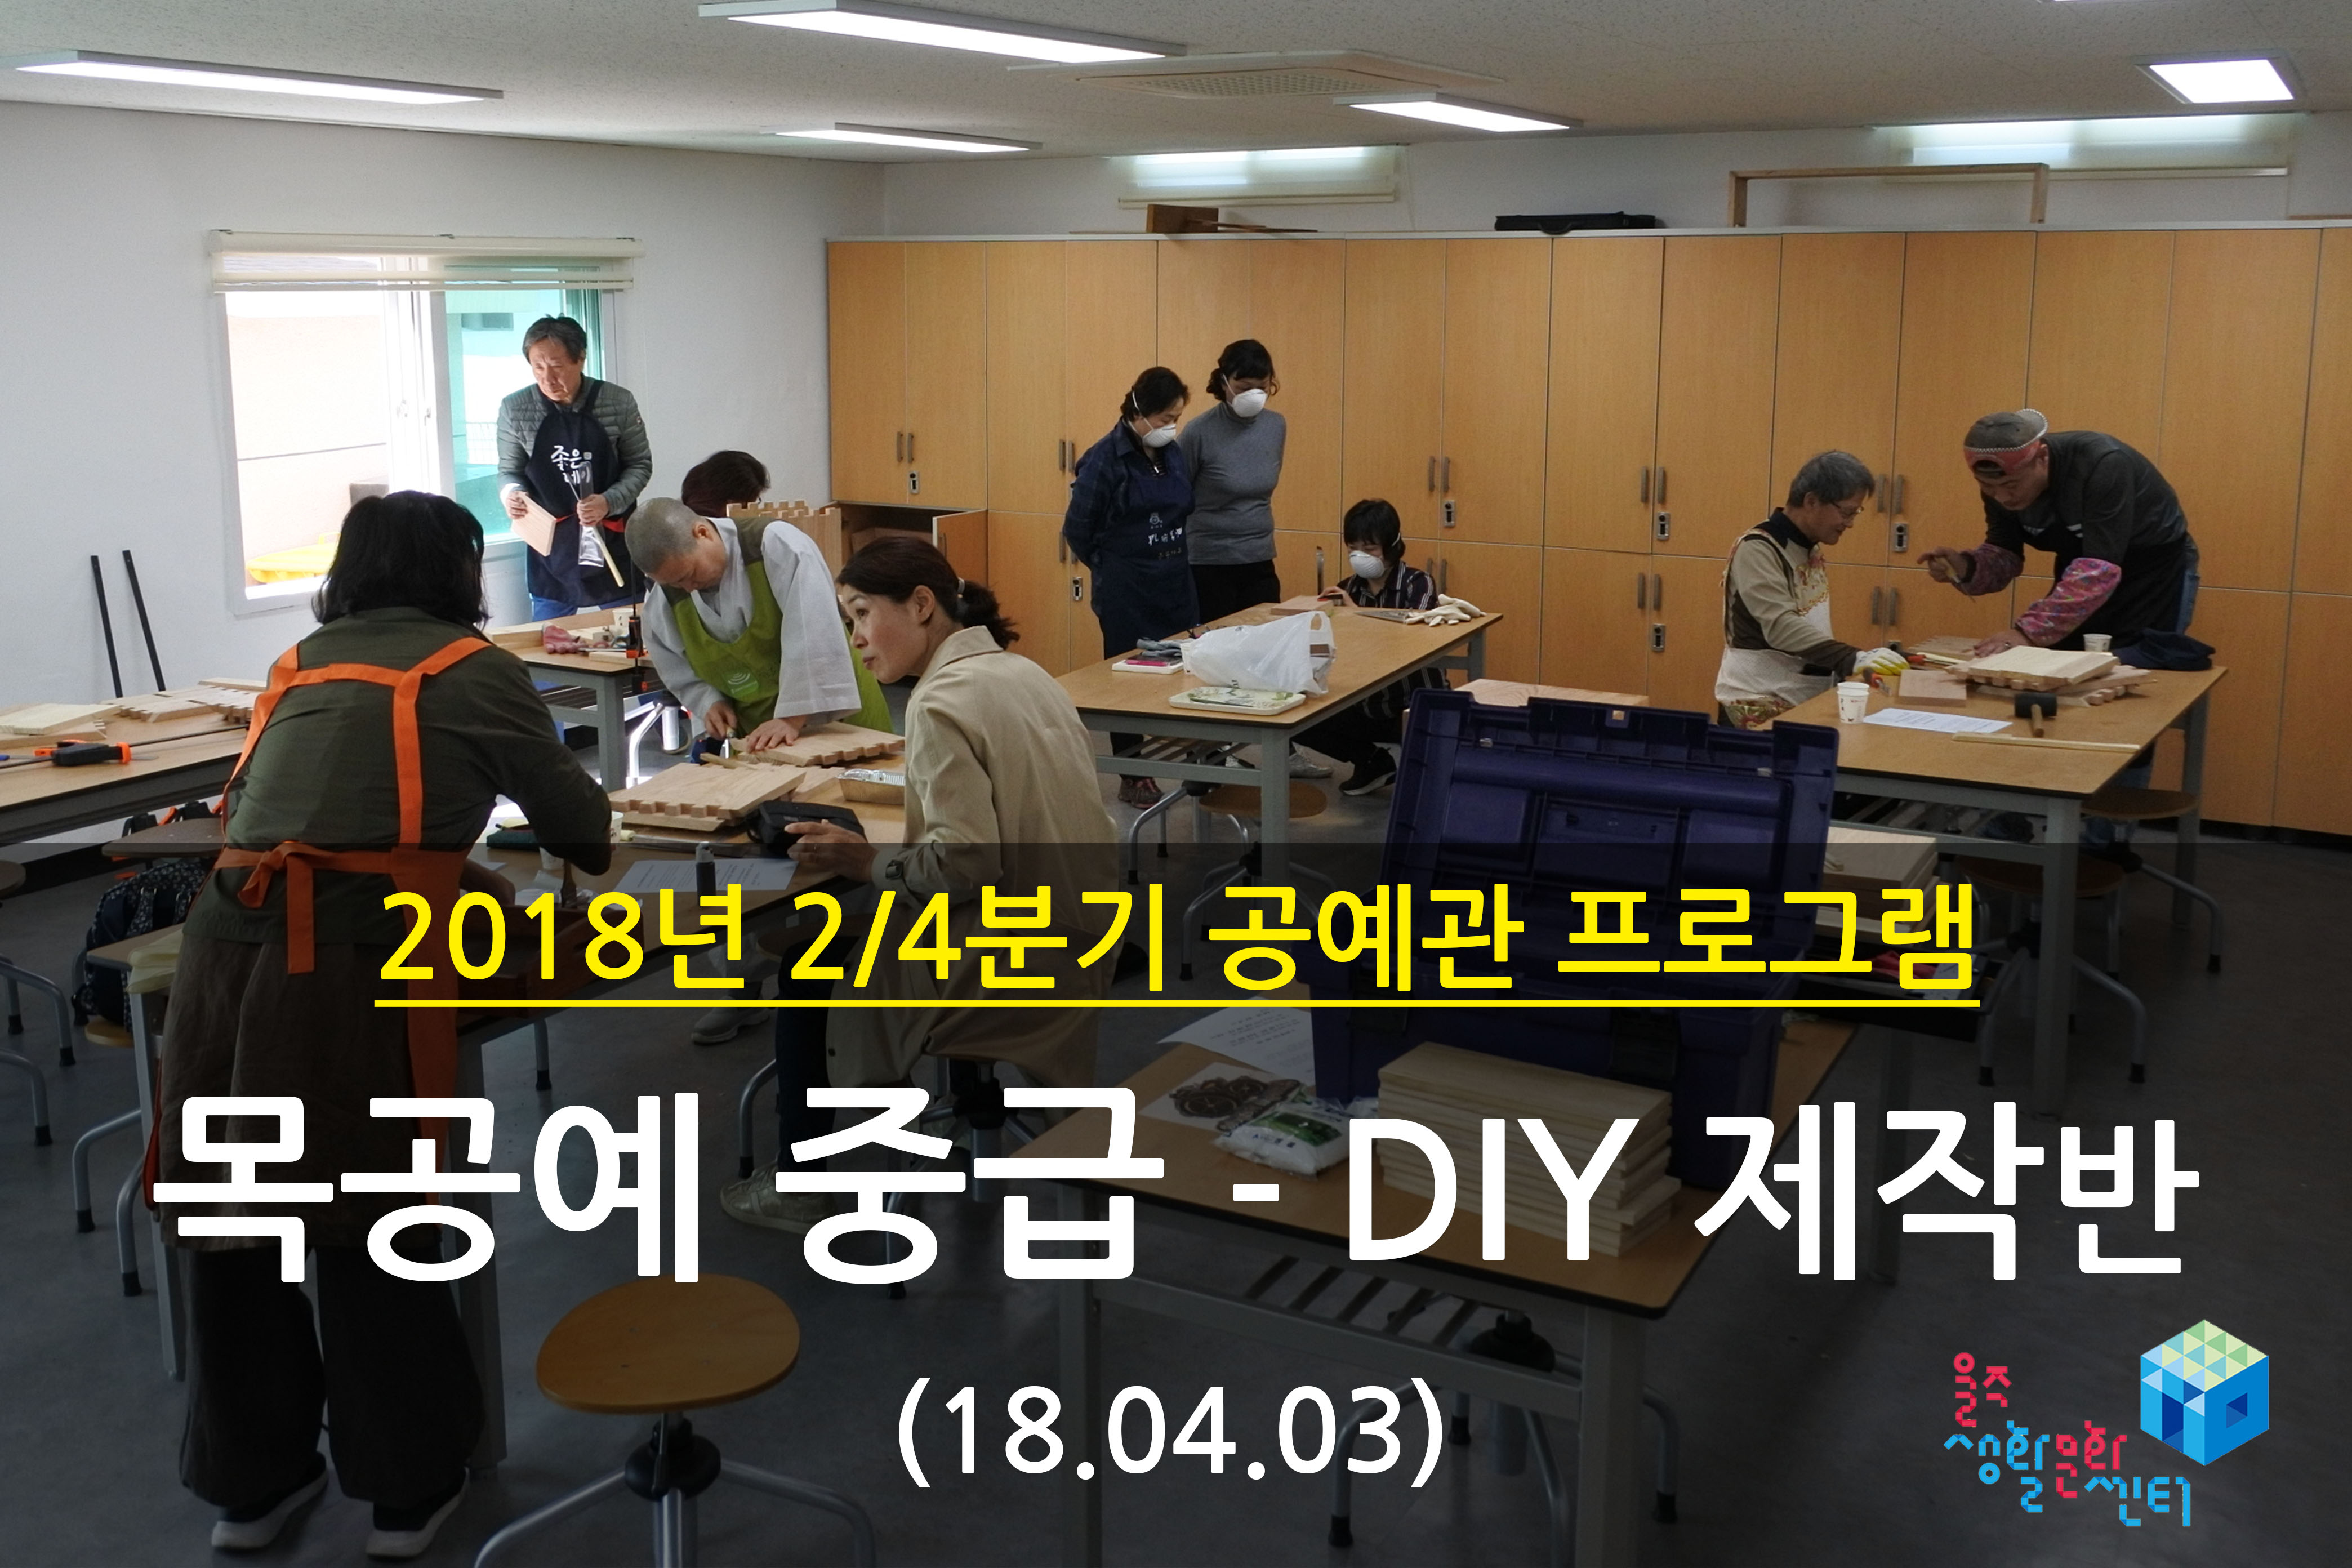 2018.04.03 _ 목공예 중급 - DIY 제작반 _ 2/4분기 1주차 수업